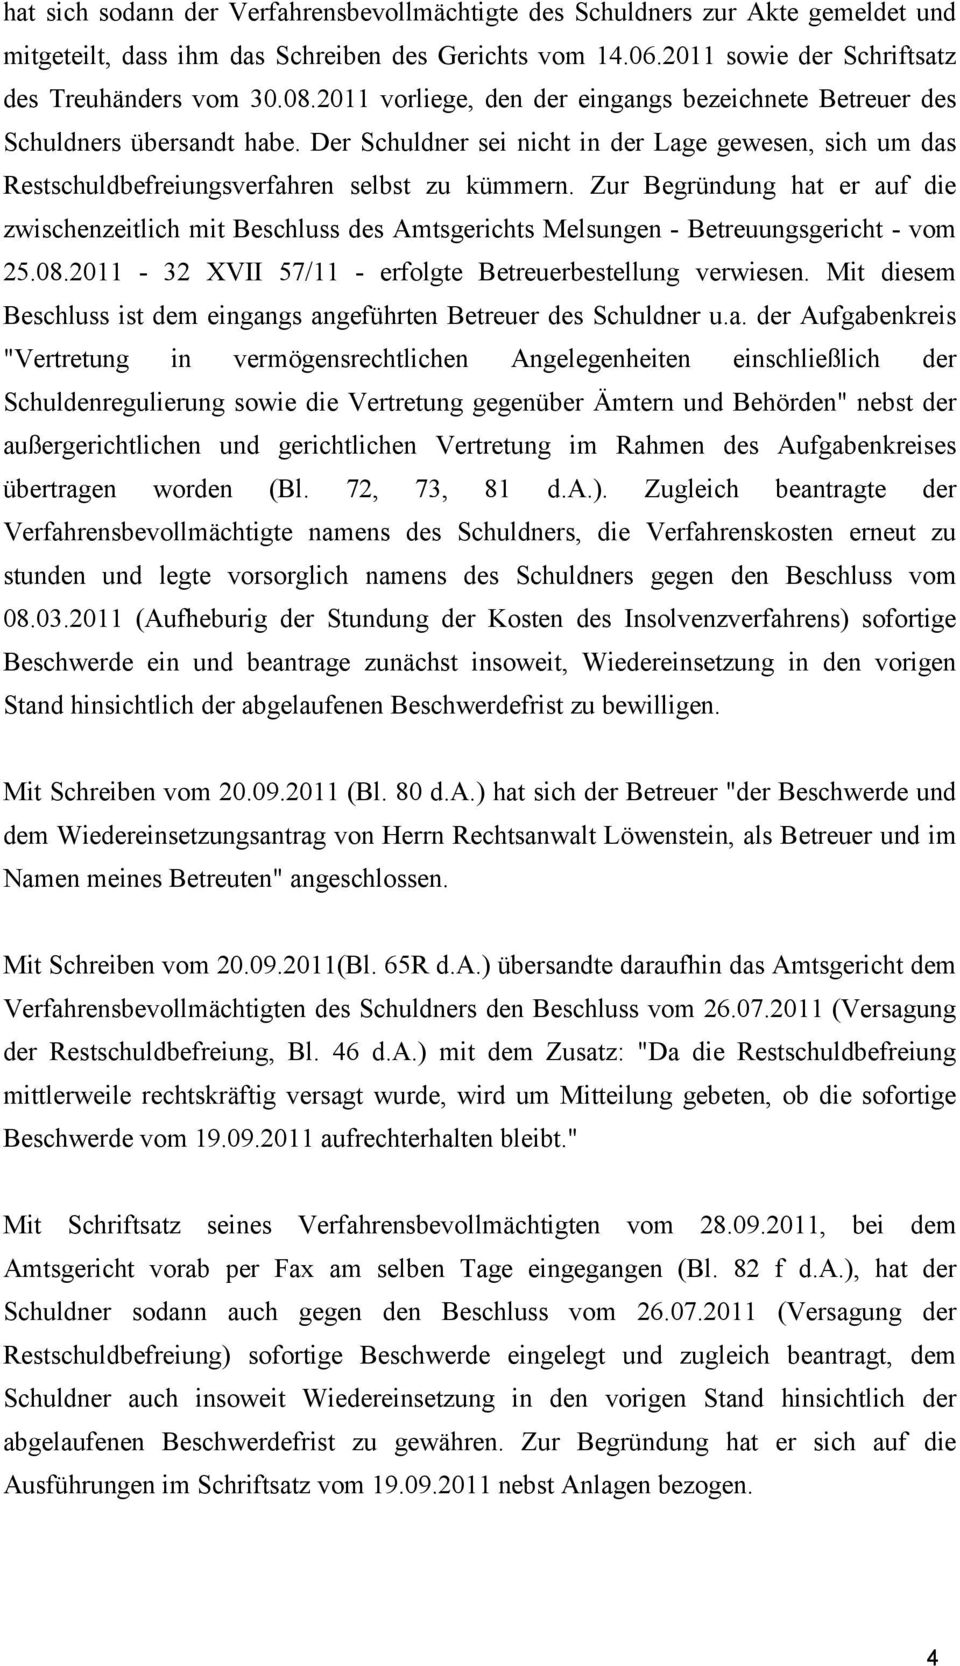 Zur Begründung hat er auf die zwischenzeitlich mit Beschluss des Amtsgerichts Melsungen - Betreuungsgericht - vom 25.08.2011-32 XVII 57/11 - erfolgte Betreuerbestellung verwiesen.